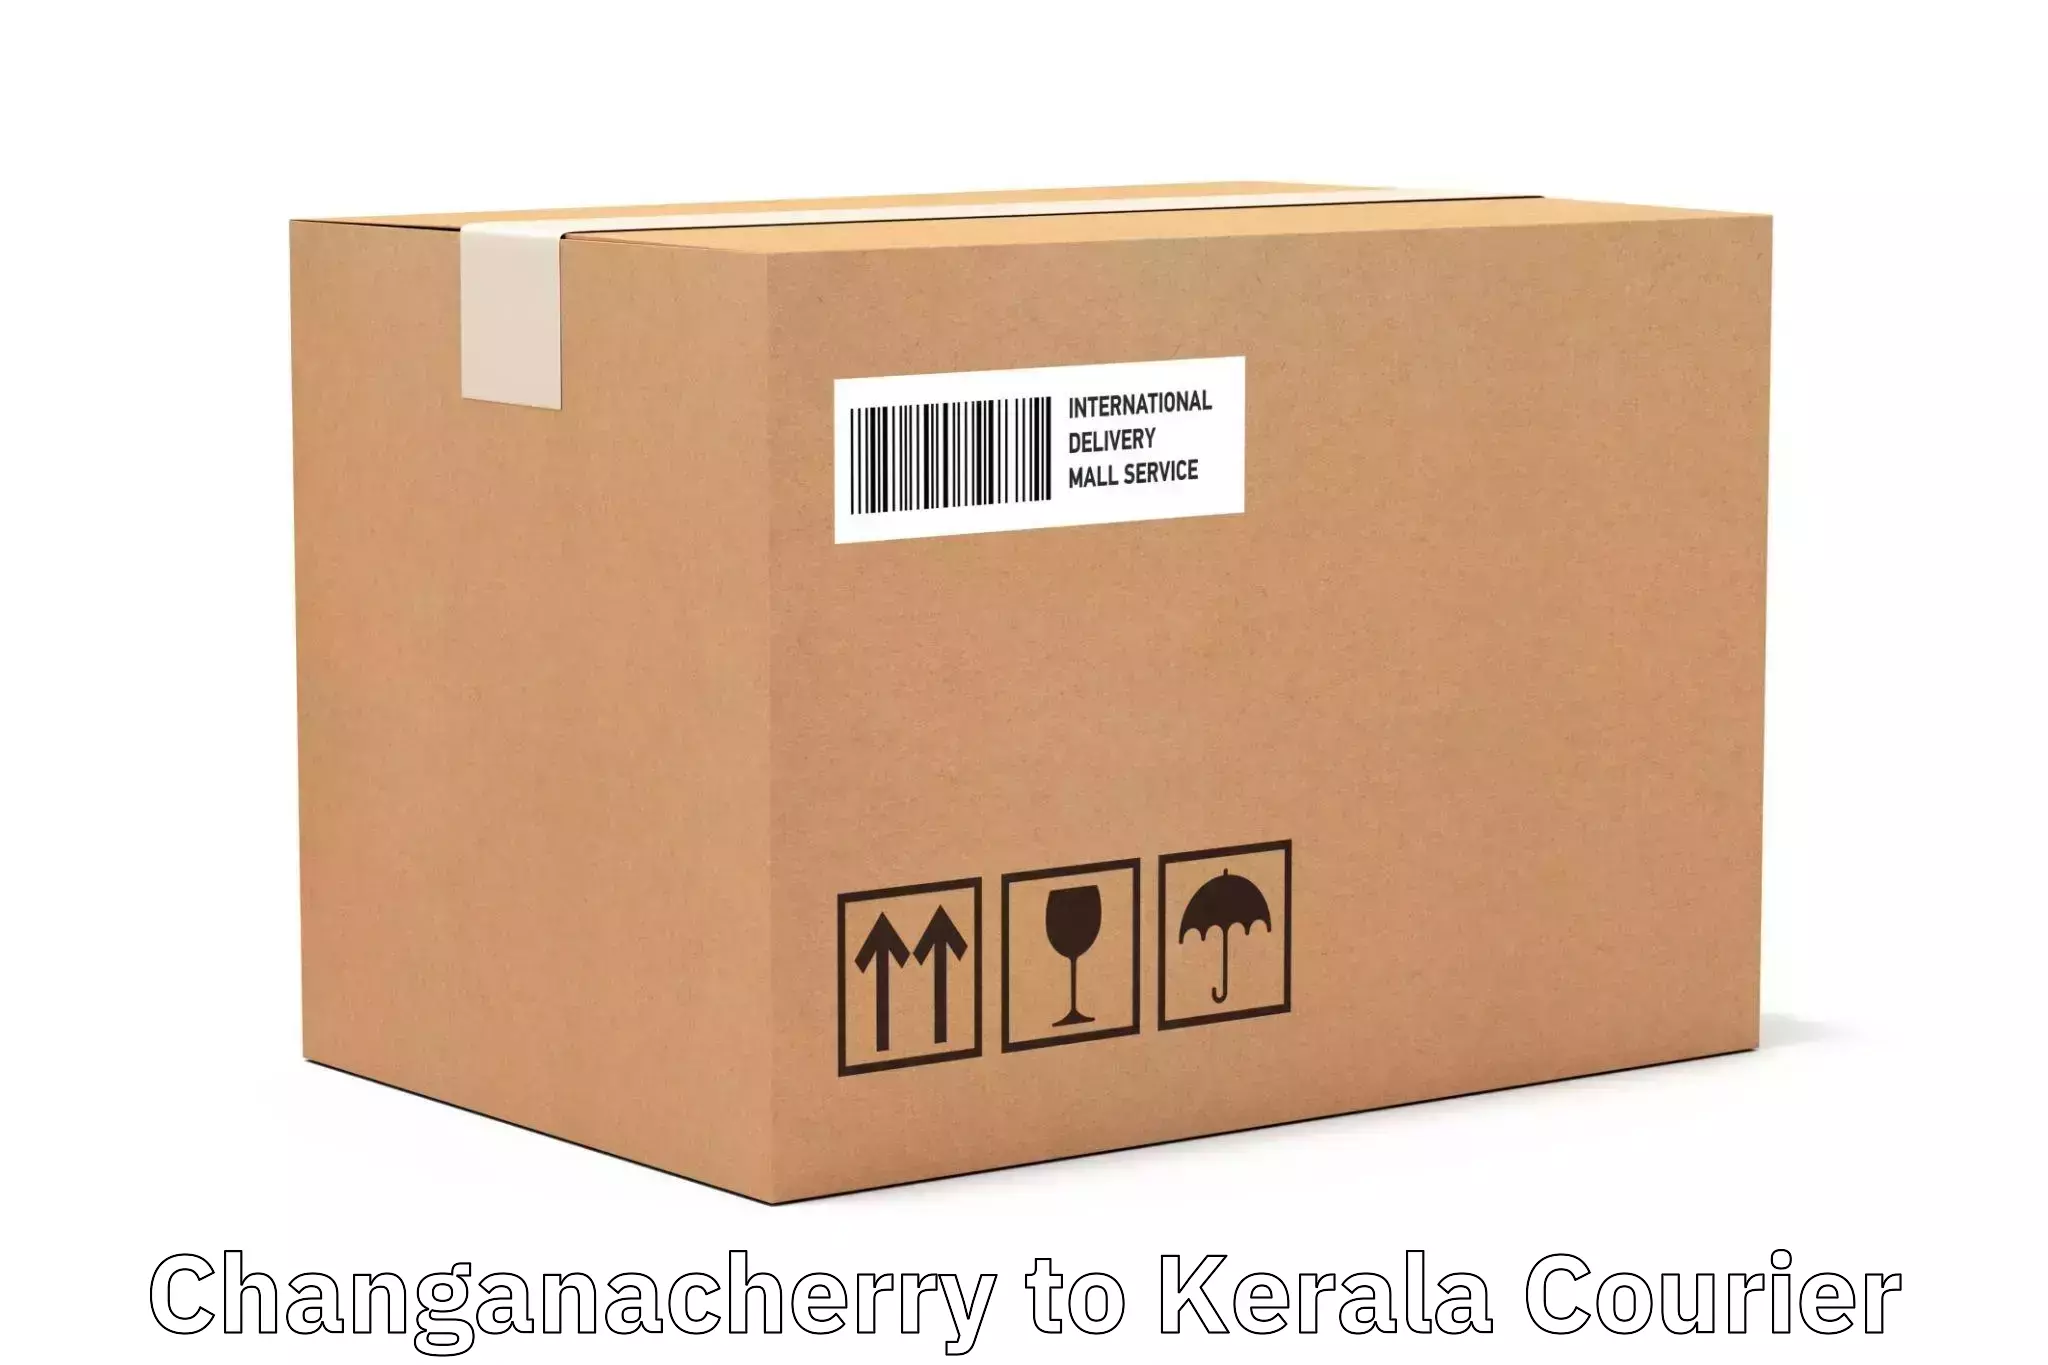 Comprehensive shipping network Changanacherry to Koothattukulam